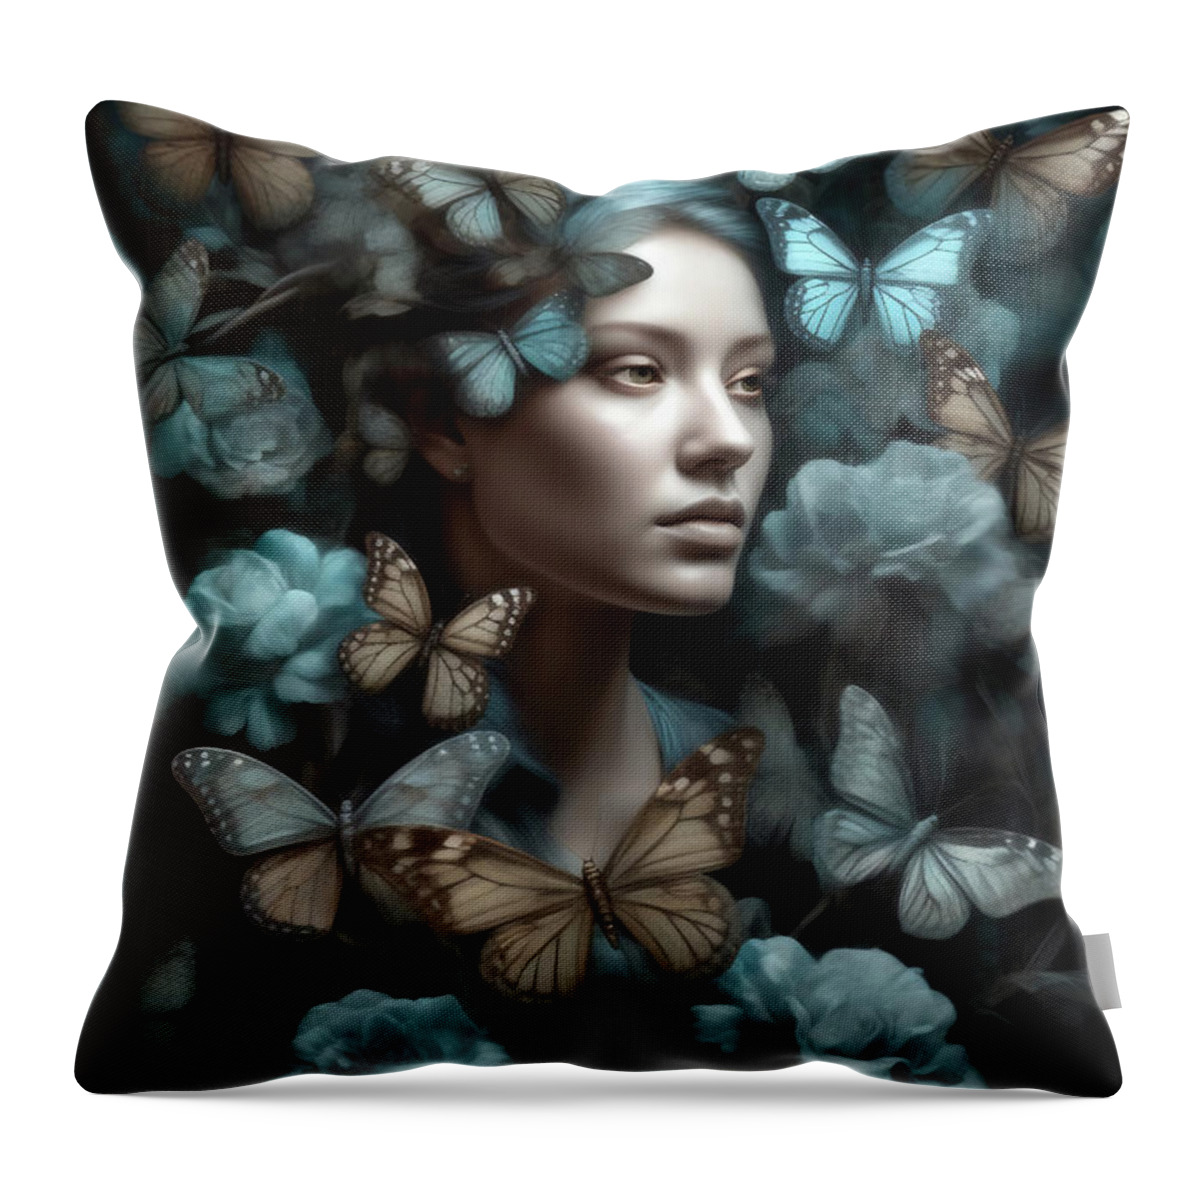 Woman Throw Pillow featuring the digital art Dream A Little Dream by Jacky Gerritsen